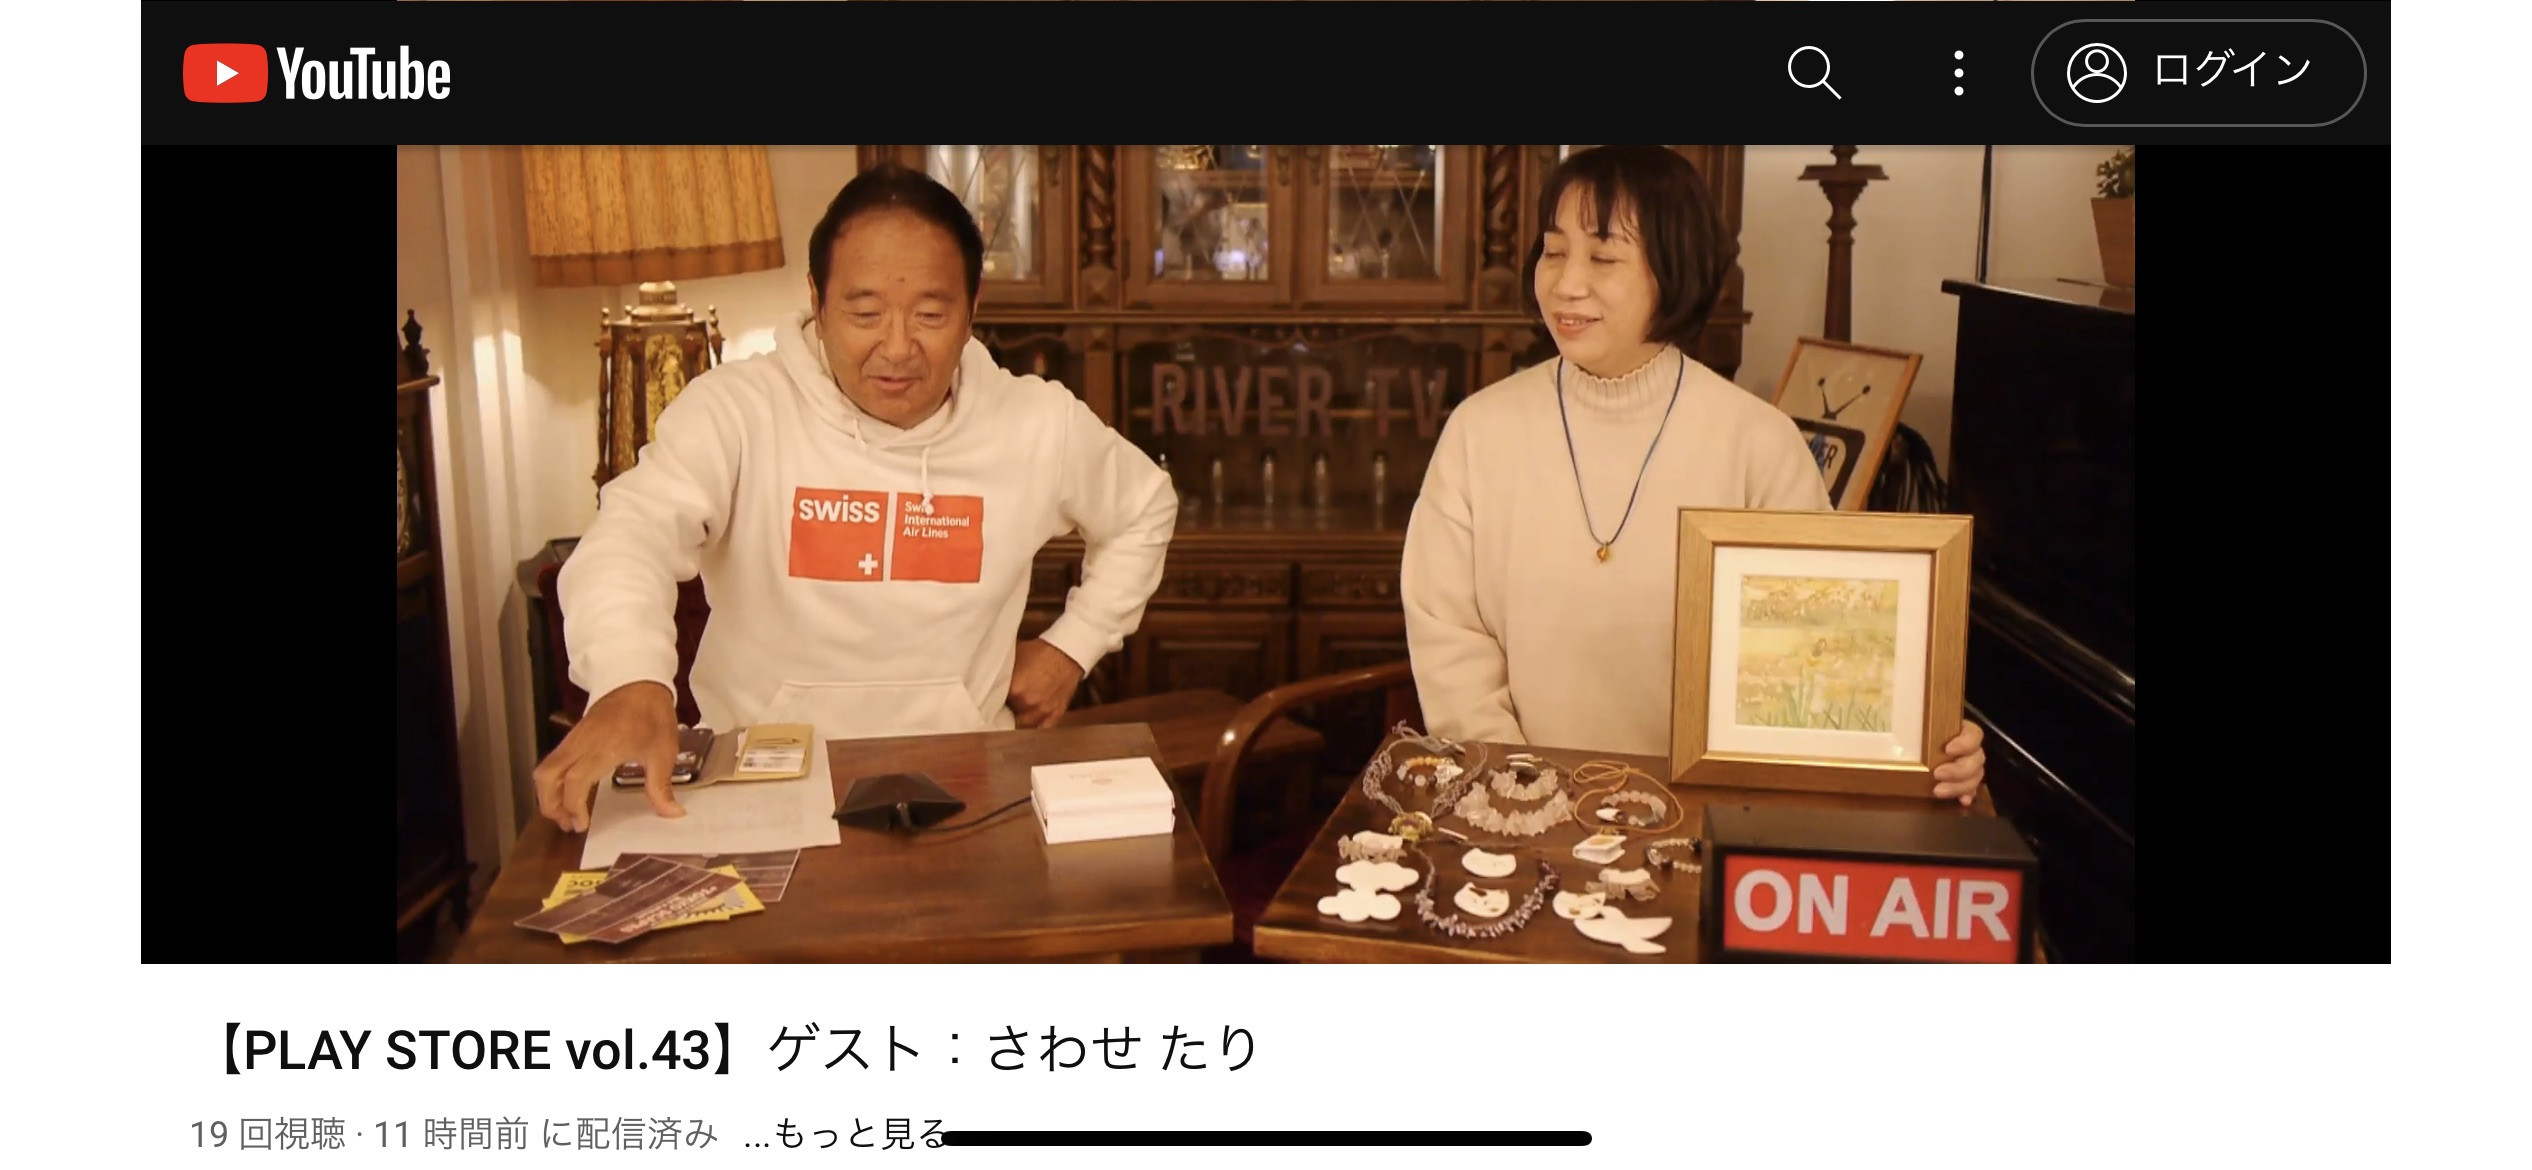 River TV Nakameguroさんのライブ配信に出演させていただきました！